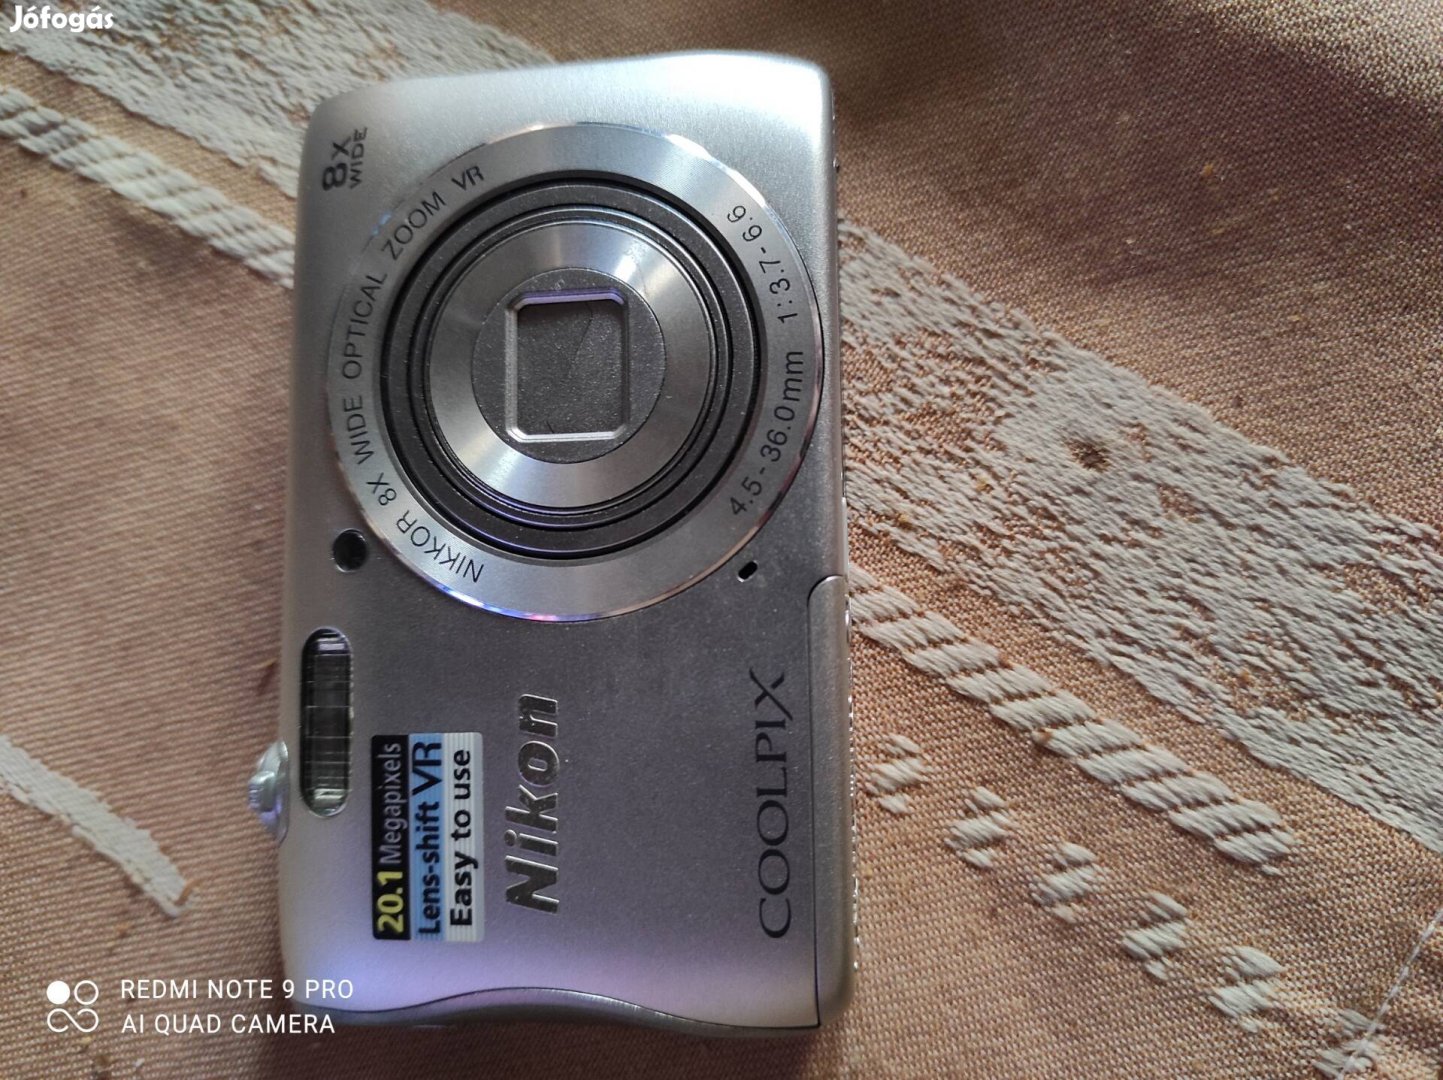 Eladó Nikon 20.1 Megapixel digitális fényképezőgép